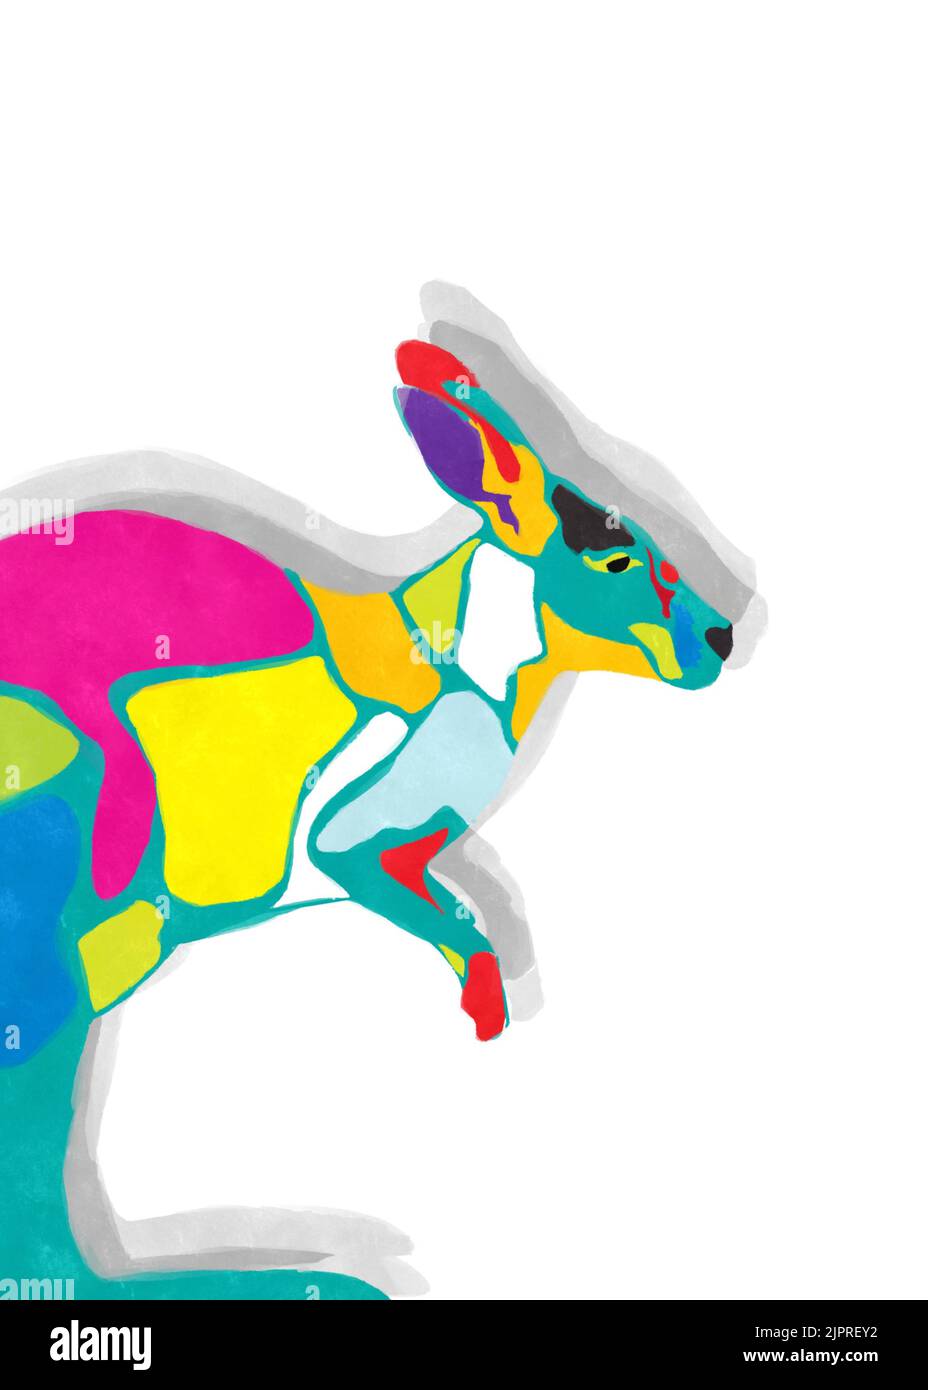 Dessin aquarelle d'un kangourou de couleur sur fond blanc Banque D'Images